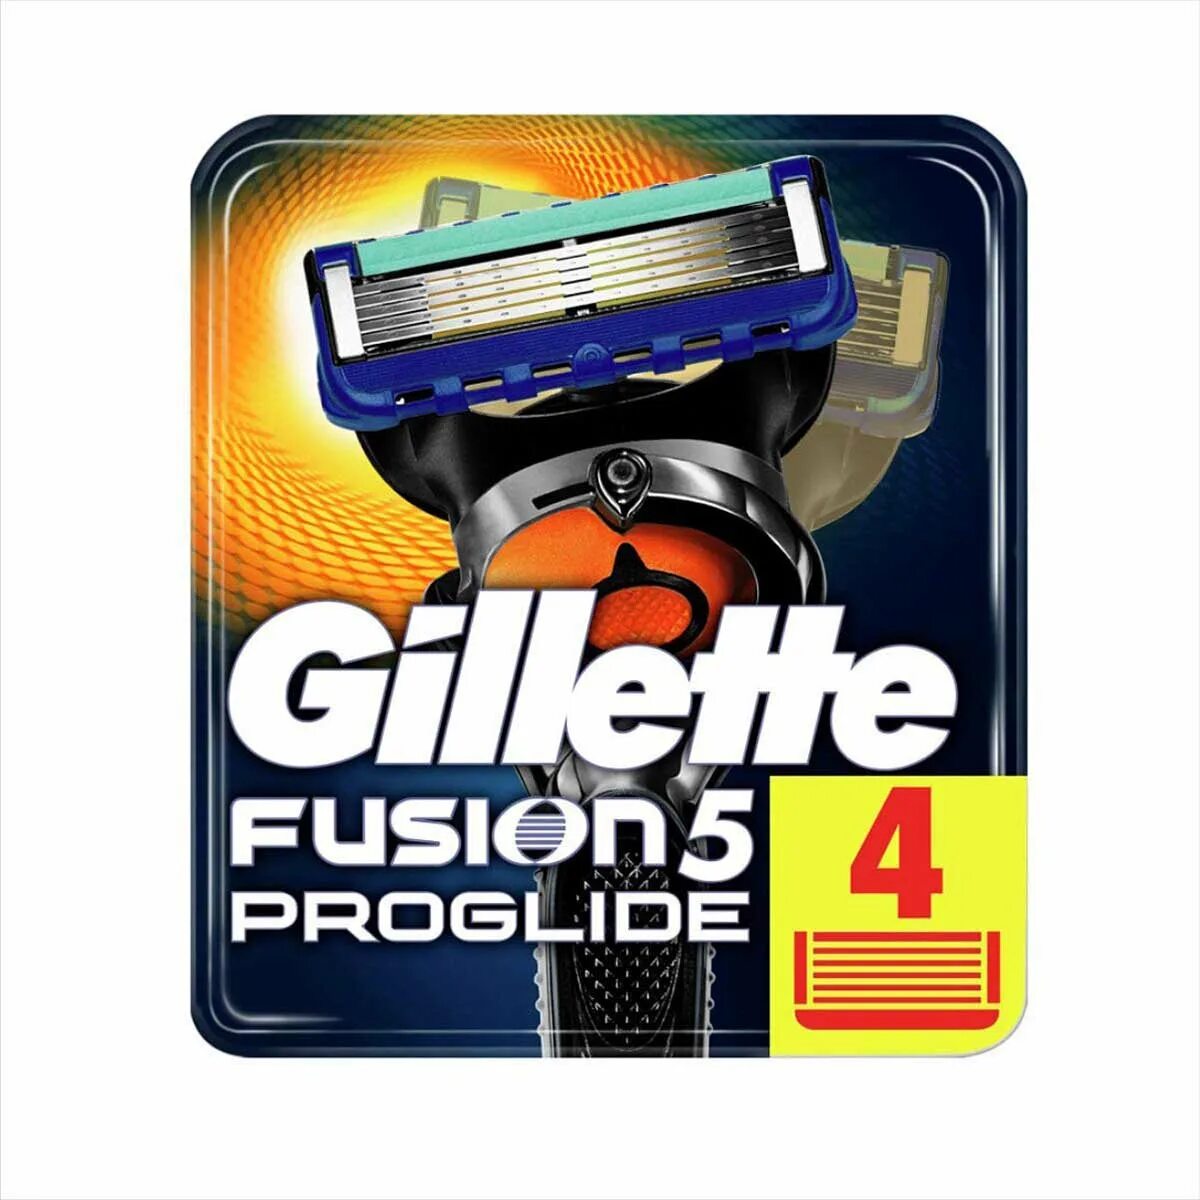 Fusion5 proglide кассеты. Джилет Фьюжен 5 Проглайд лезвия. Fusion PROGLIDE 5 кассеты.